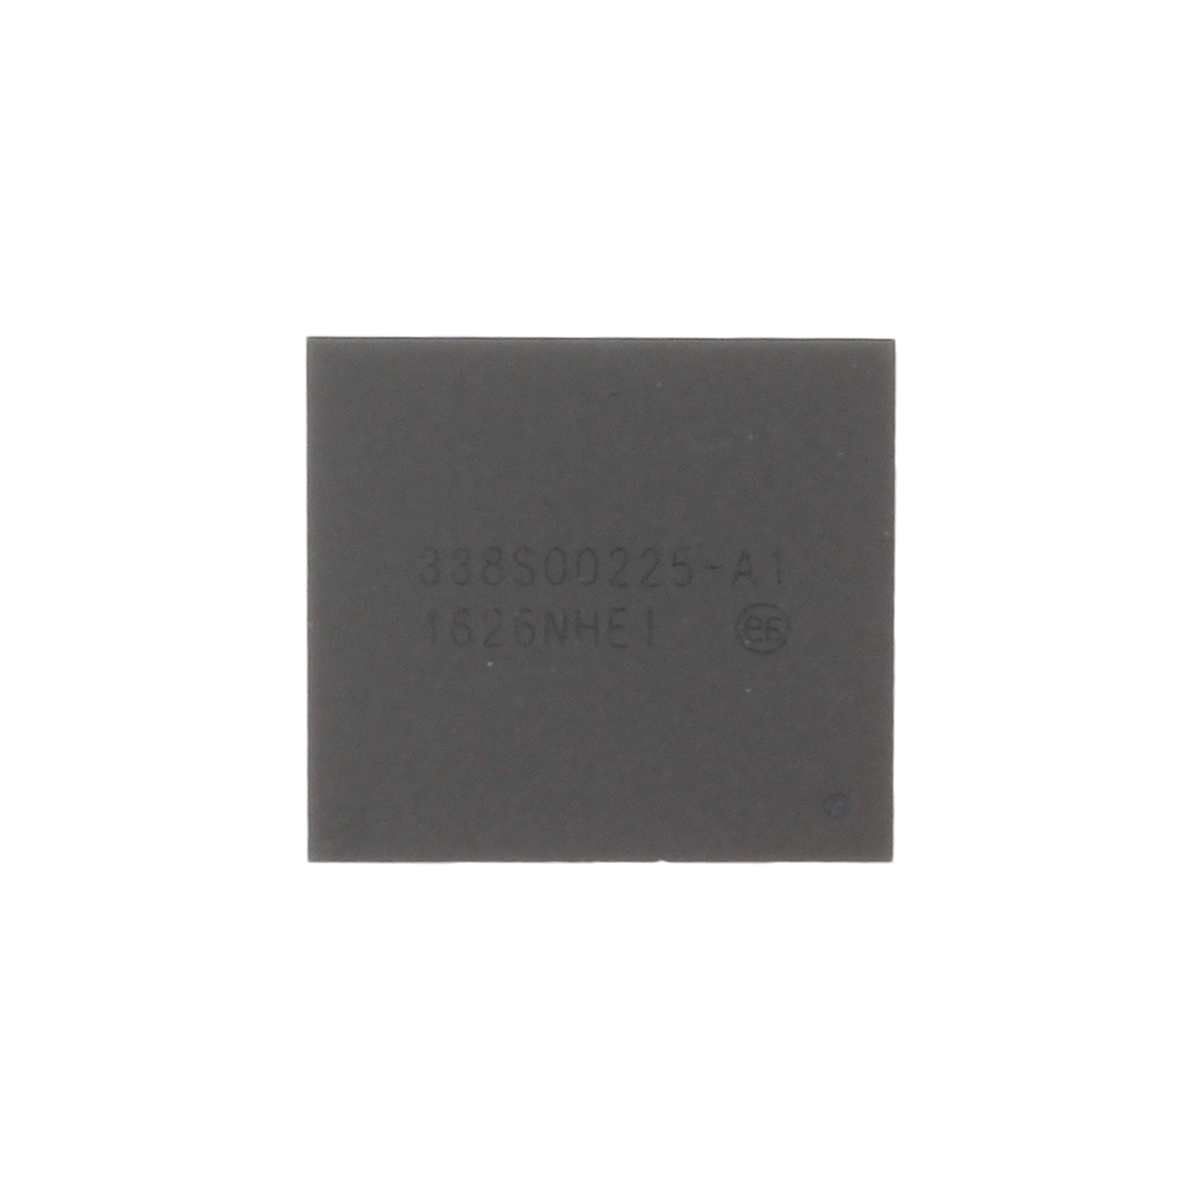 IC-Chip für Power Management 338S00225,  kompatibel mit iPhone 7/7 Plus